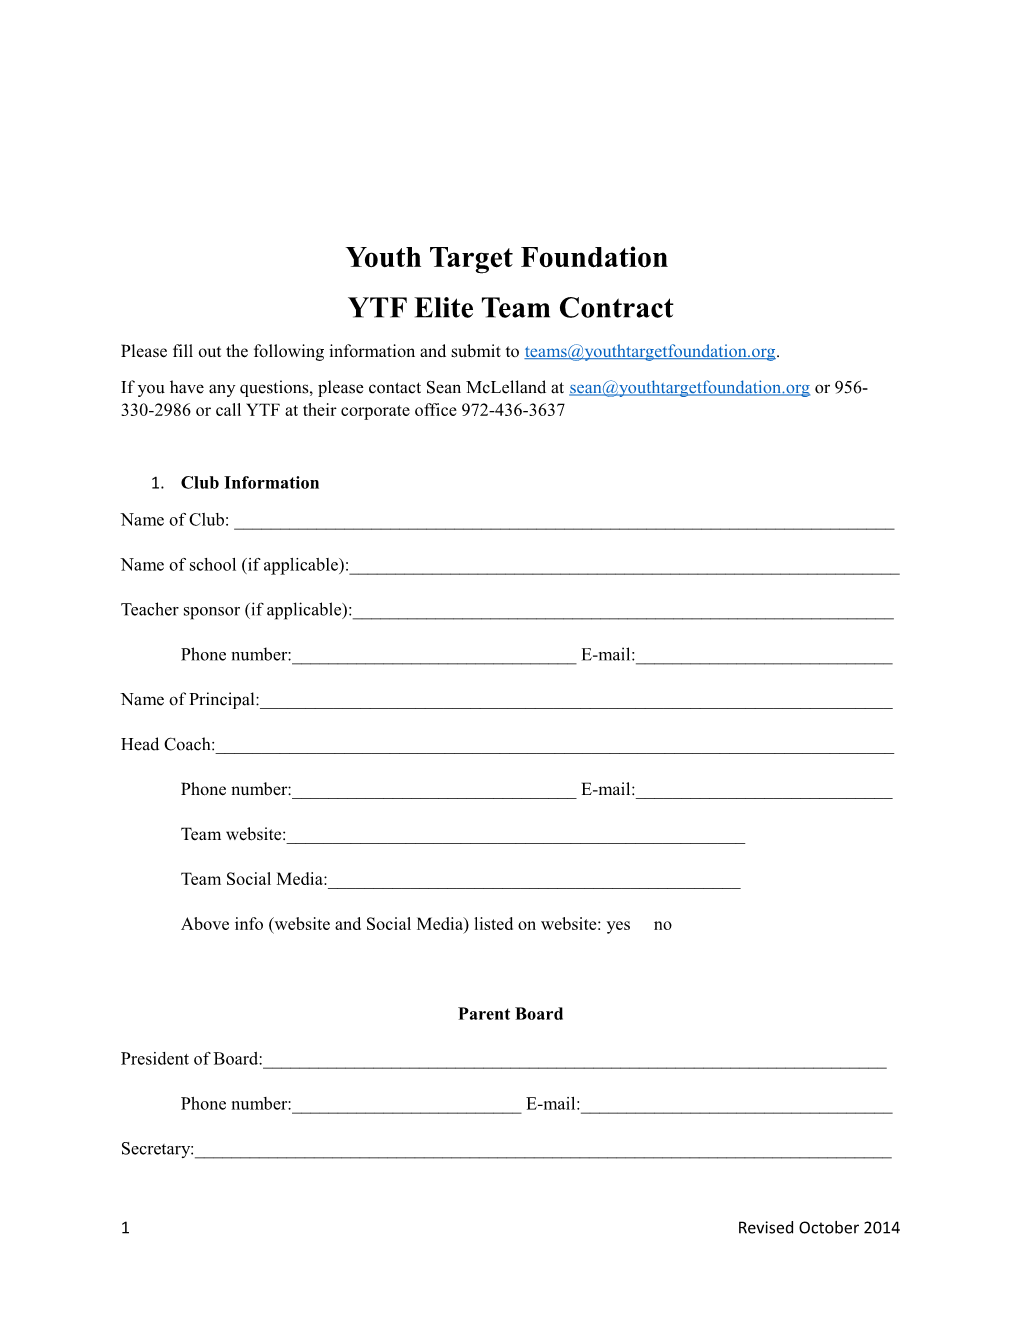 YTF Elite Team Contract